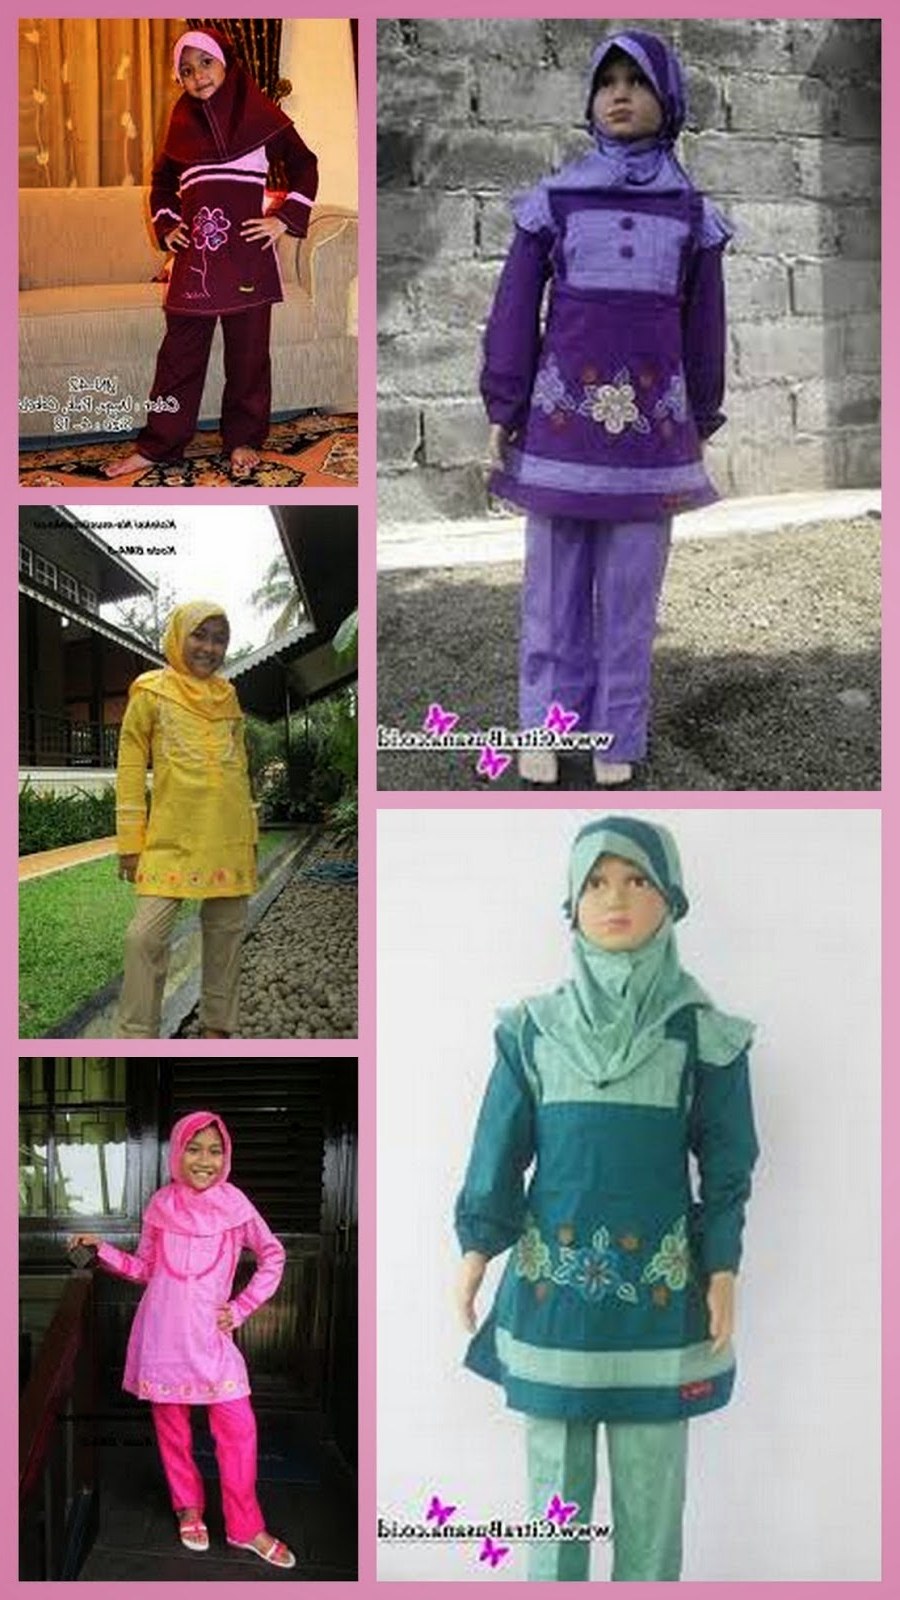 Bentuk Baju Lebaran Untuk Anak Usia 13 Tahun Kvdd Baju Muslim Anak Wanita Usia 13 Tahun Untuk Lebaran